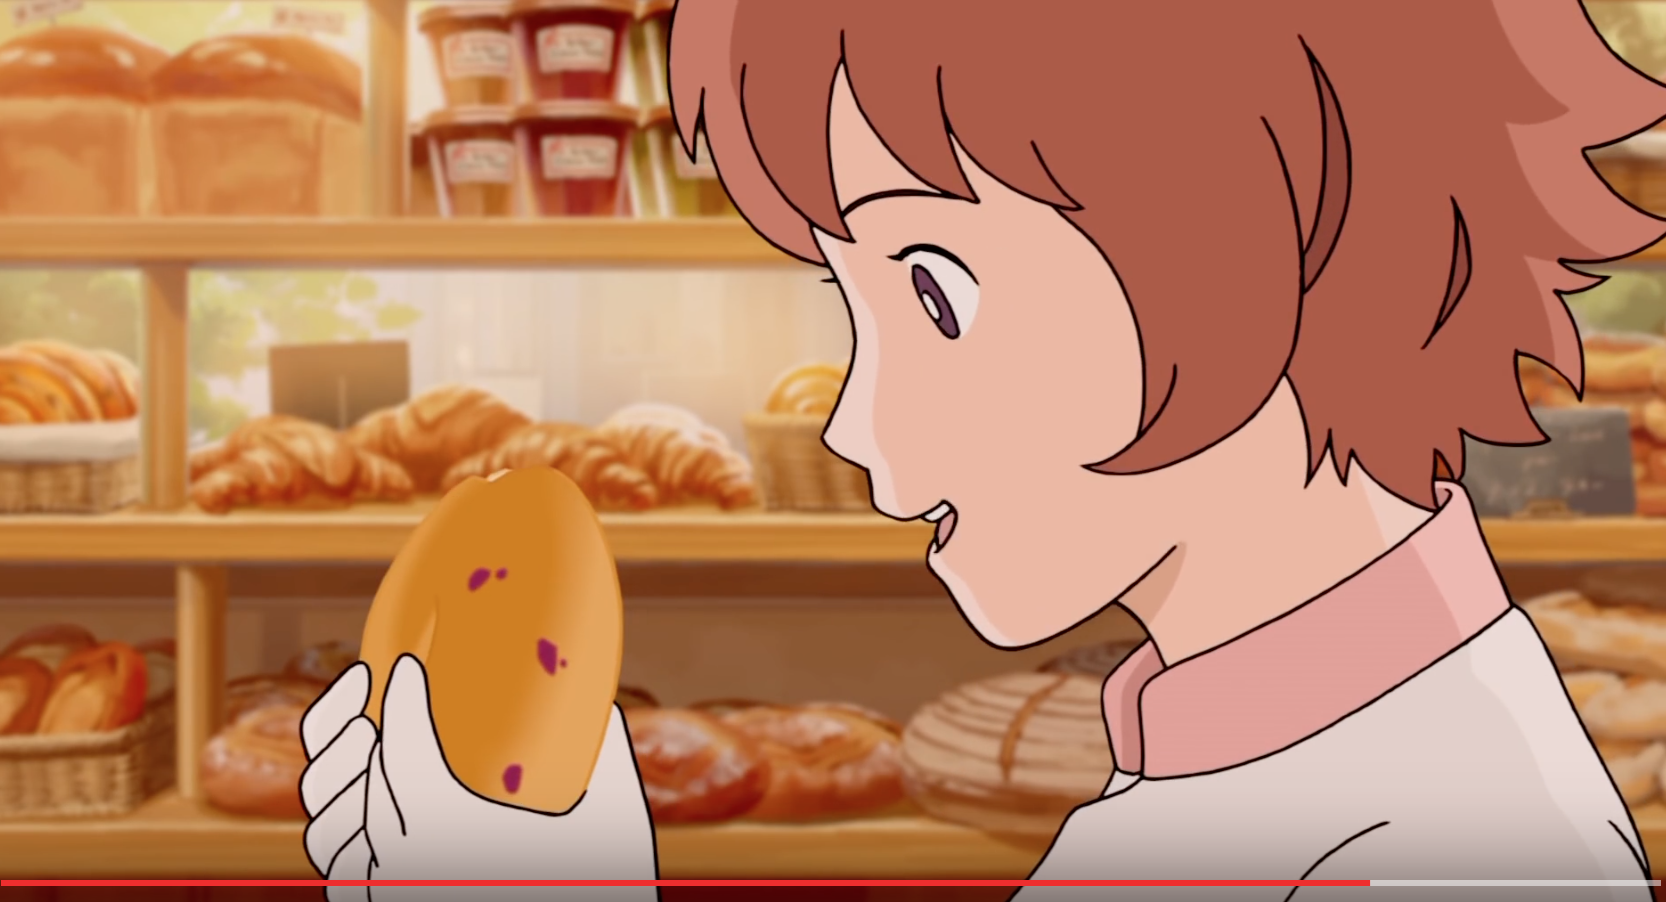 Kitsune bread. - 9GAG